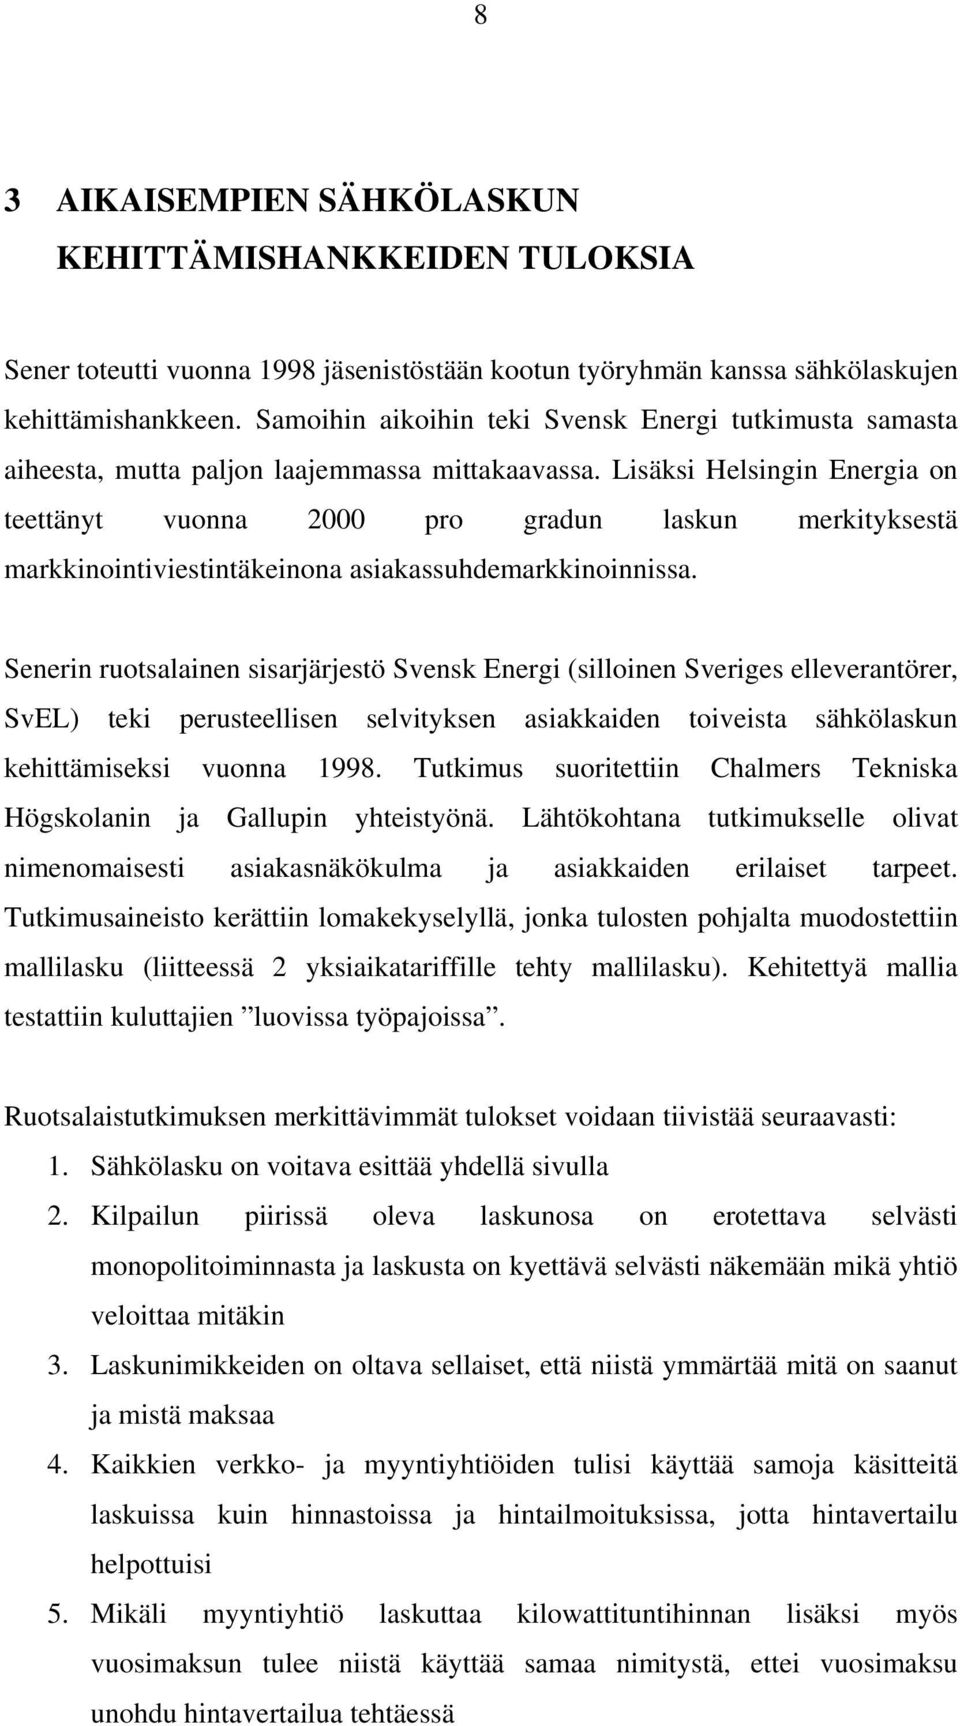 Lisäksi Helsingin Energia on teettänyt vuonna 2000 pro gradun laskun merkityksestä markkinointiviestintäkeinona asiakassuhdemarkkinoinnissa.